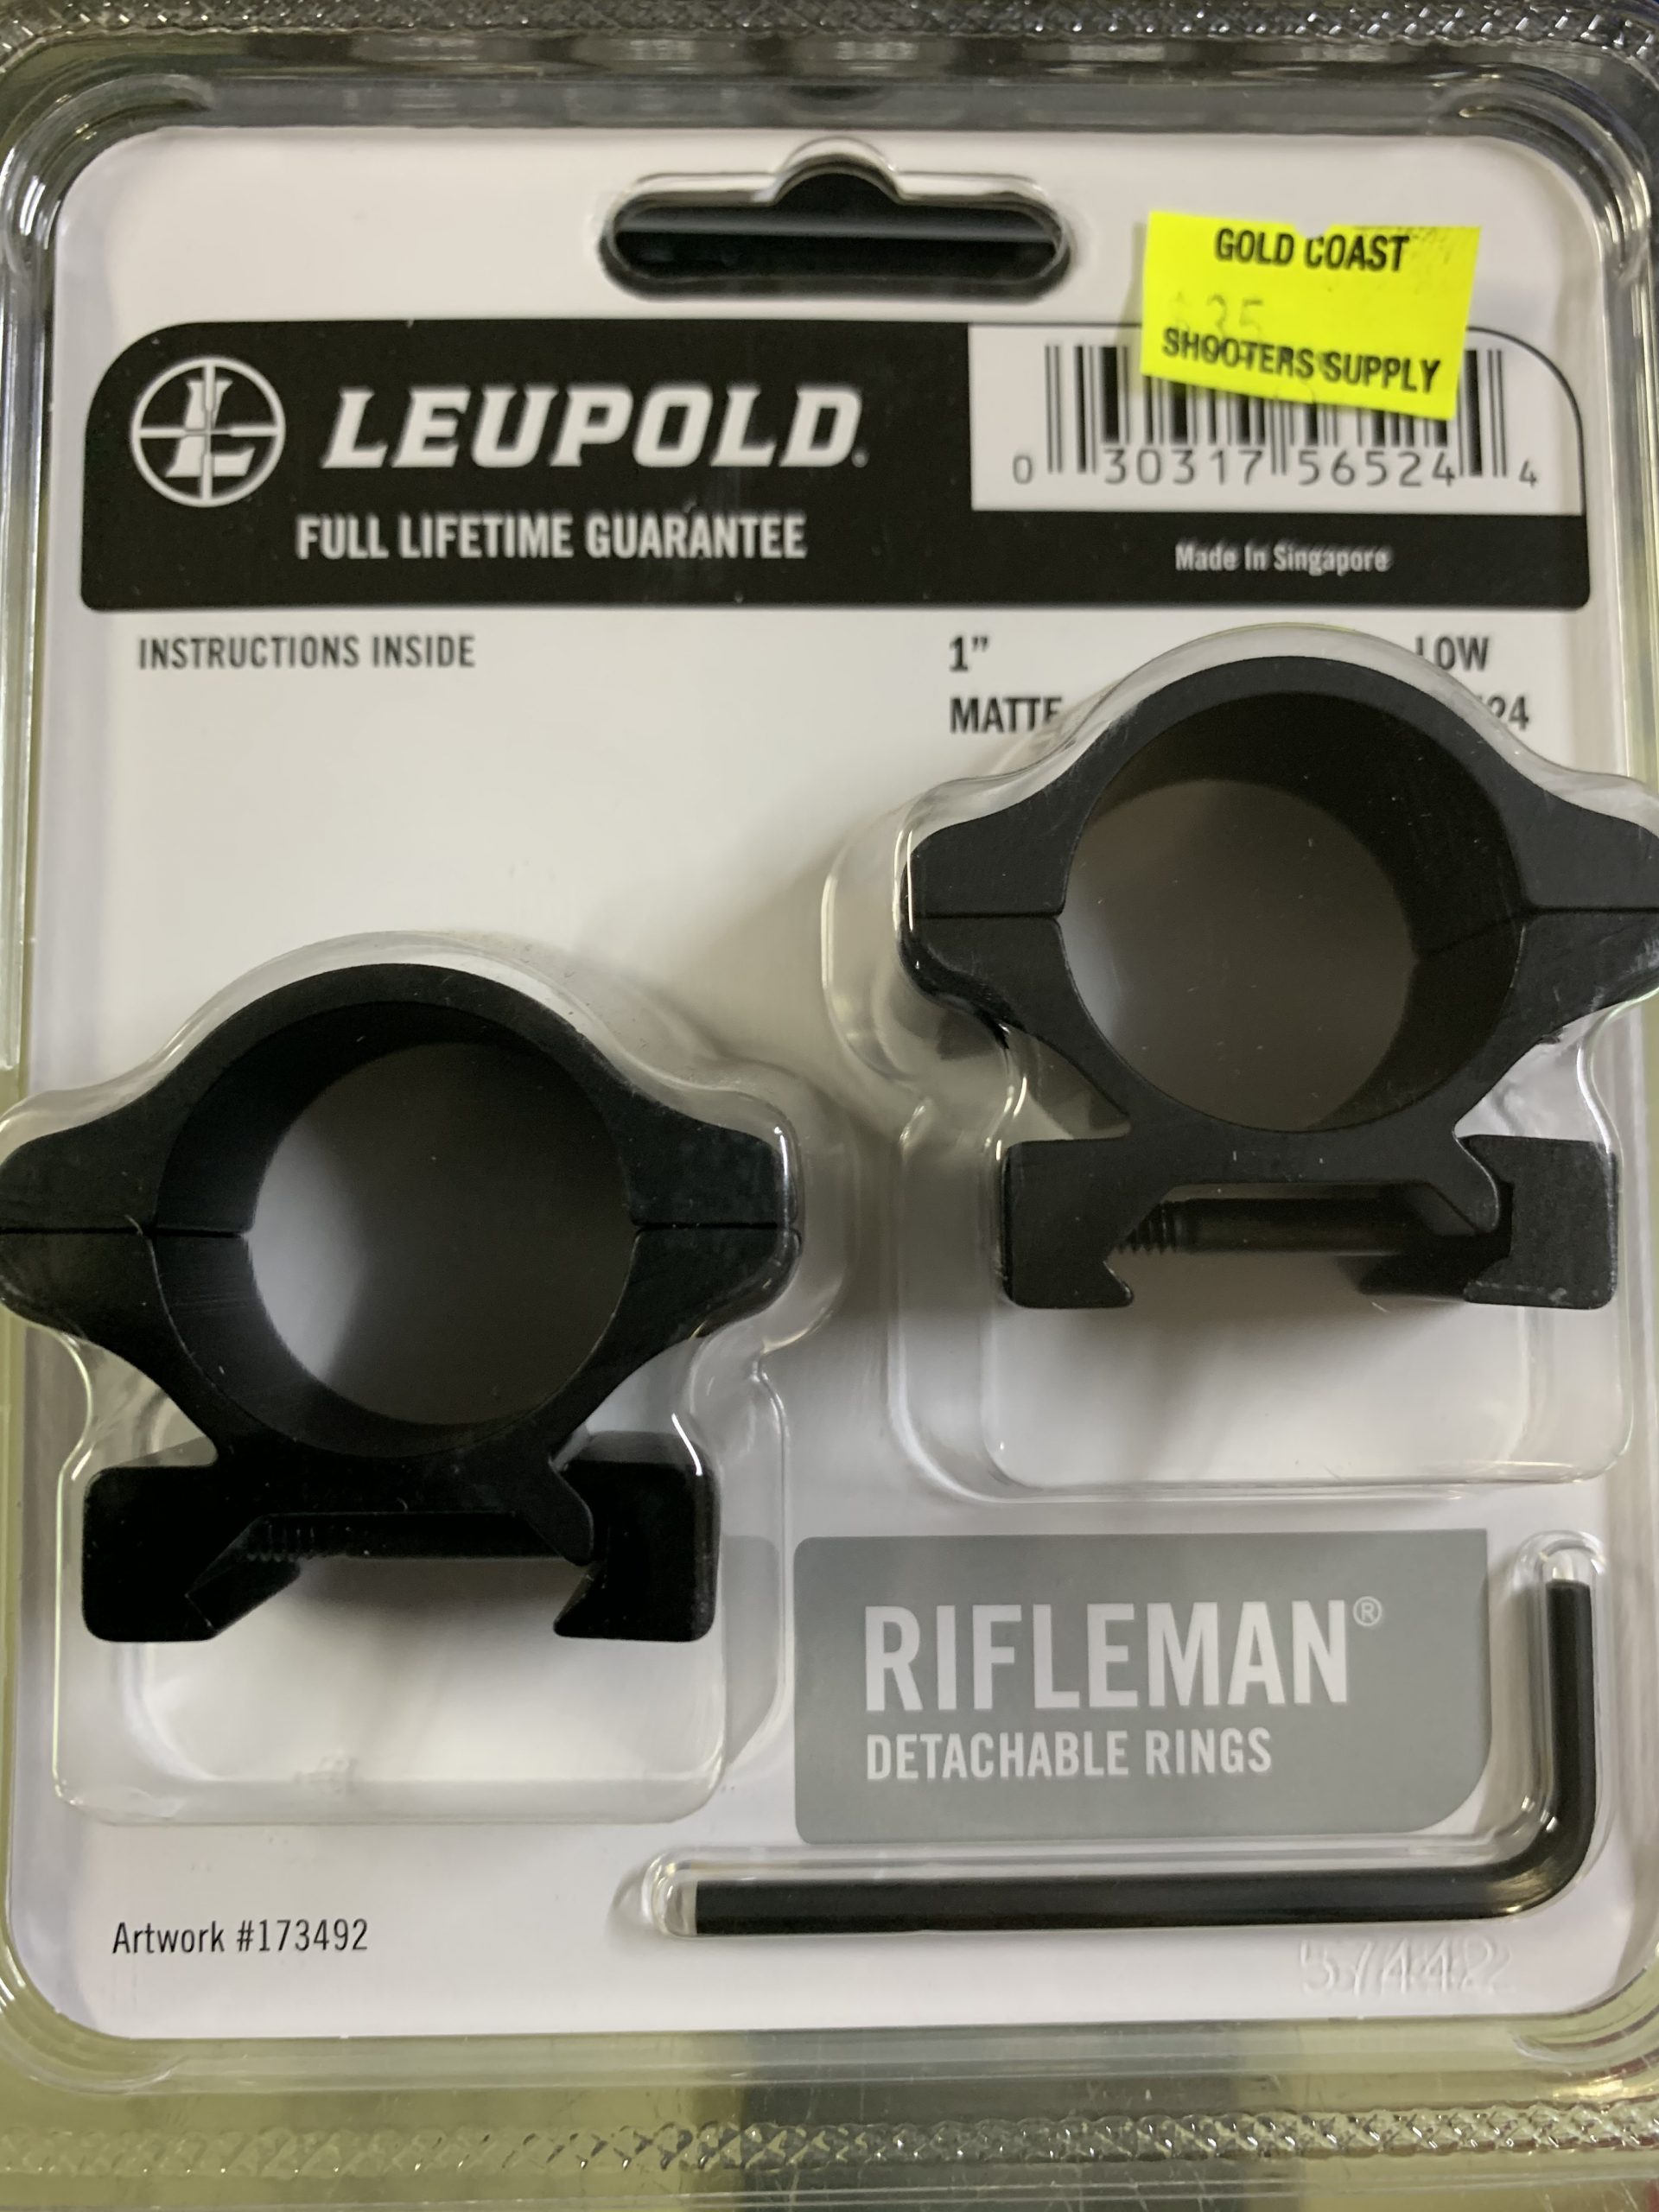 Leupold 1" low Rifleman detachable rings matte